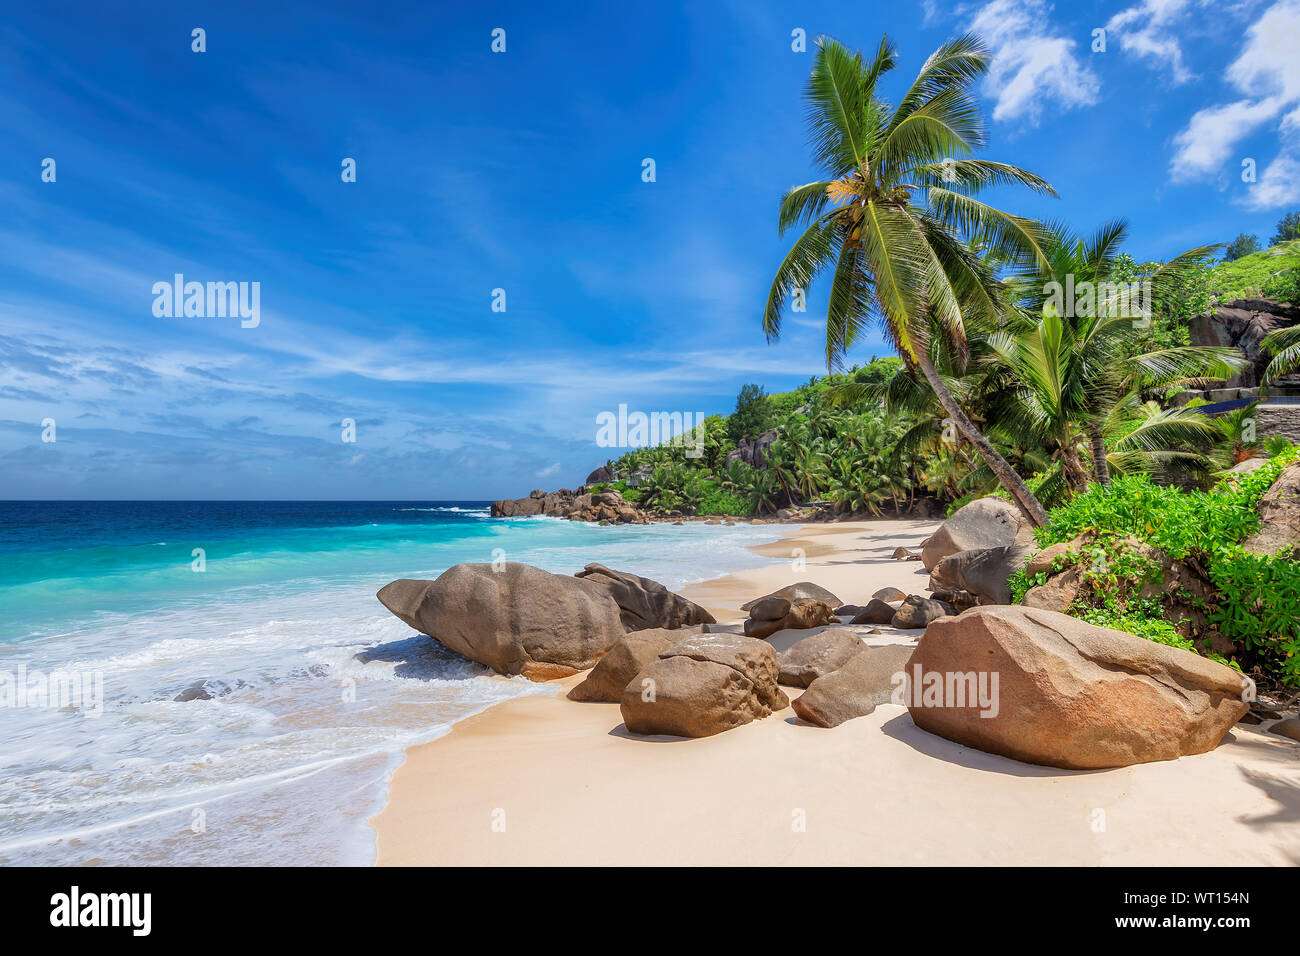 Esotica spiaggia con sabbia bianca e mare tropicale sull'isola di paradiso. Foto Stock